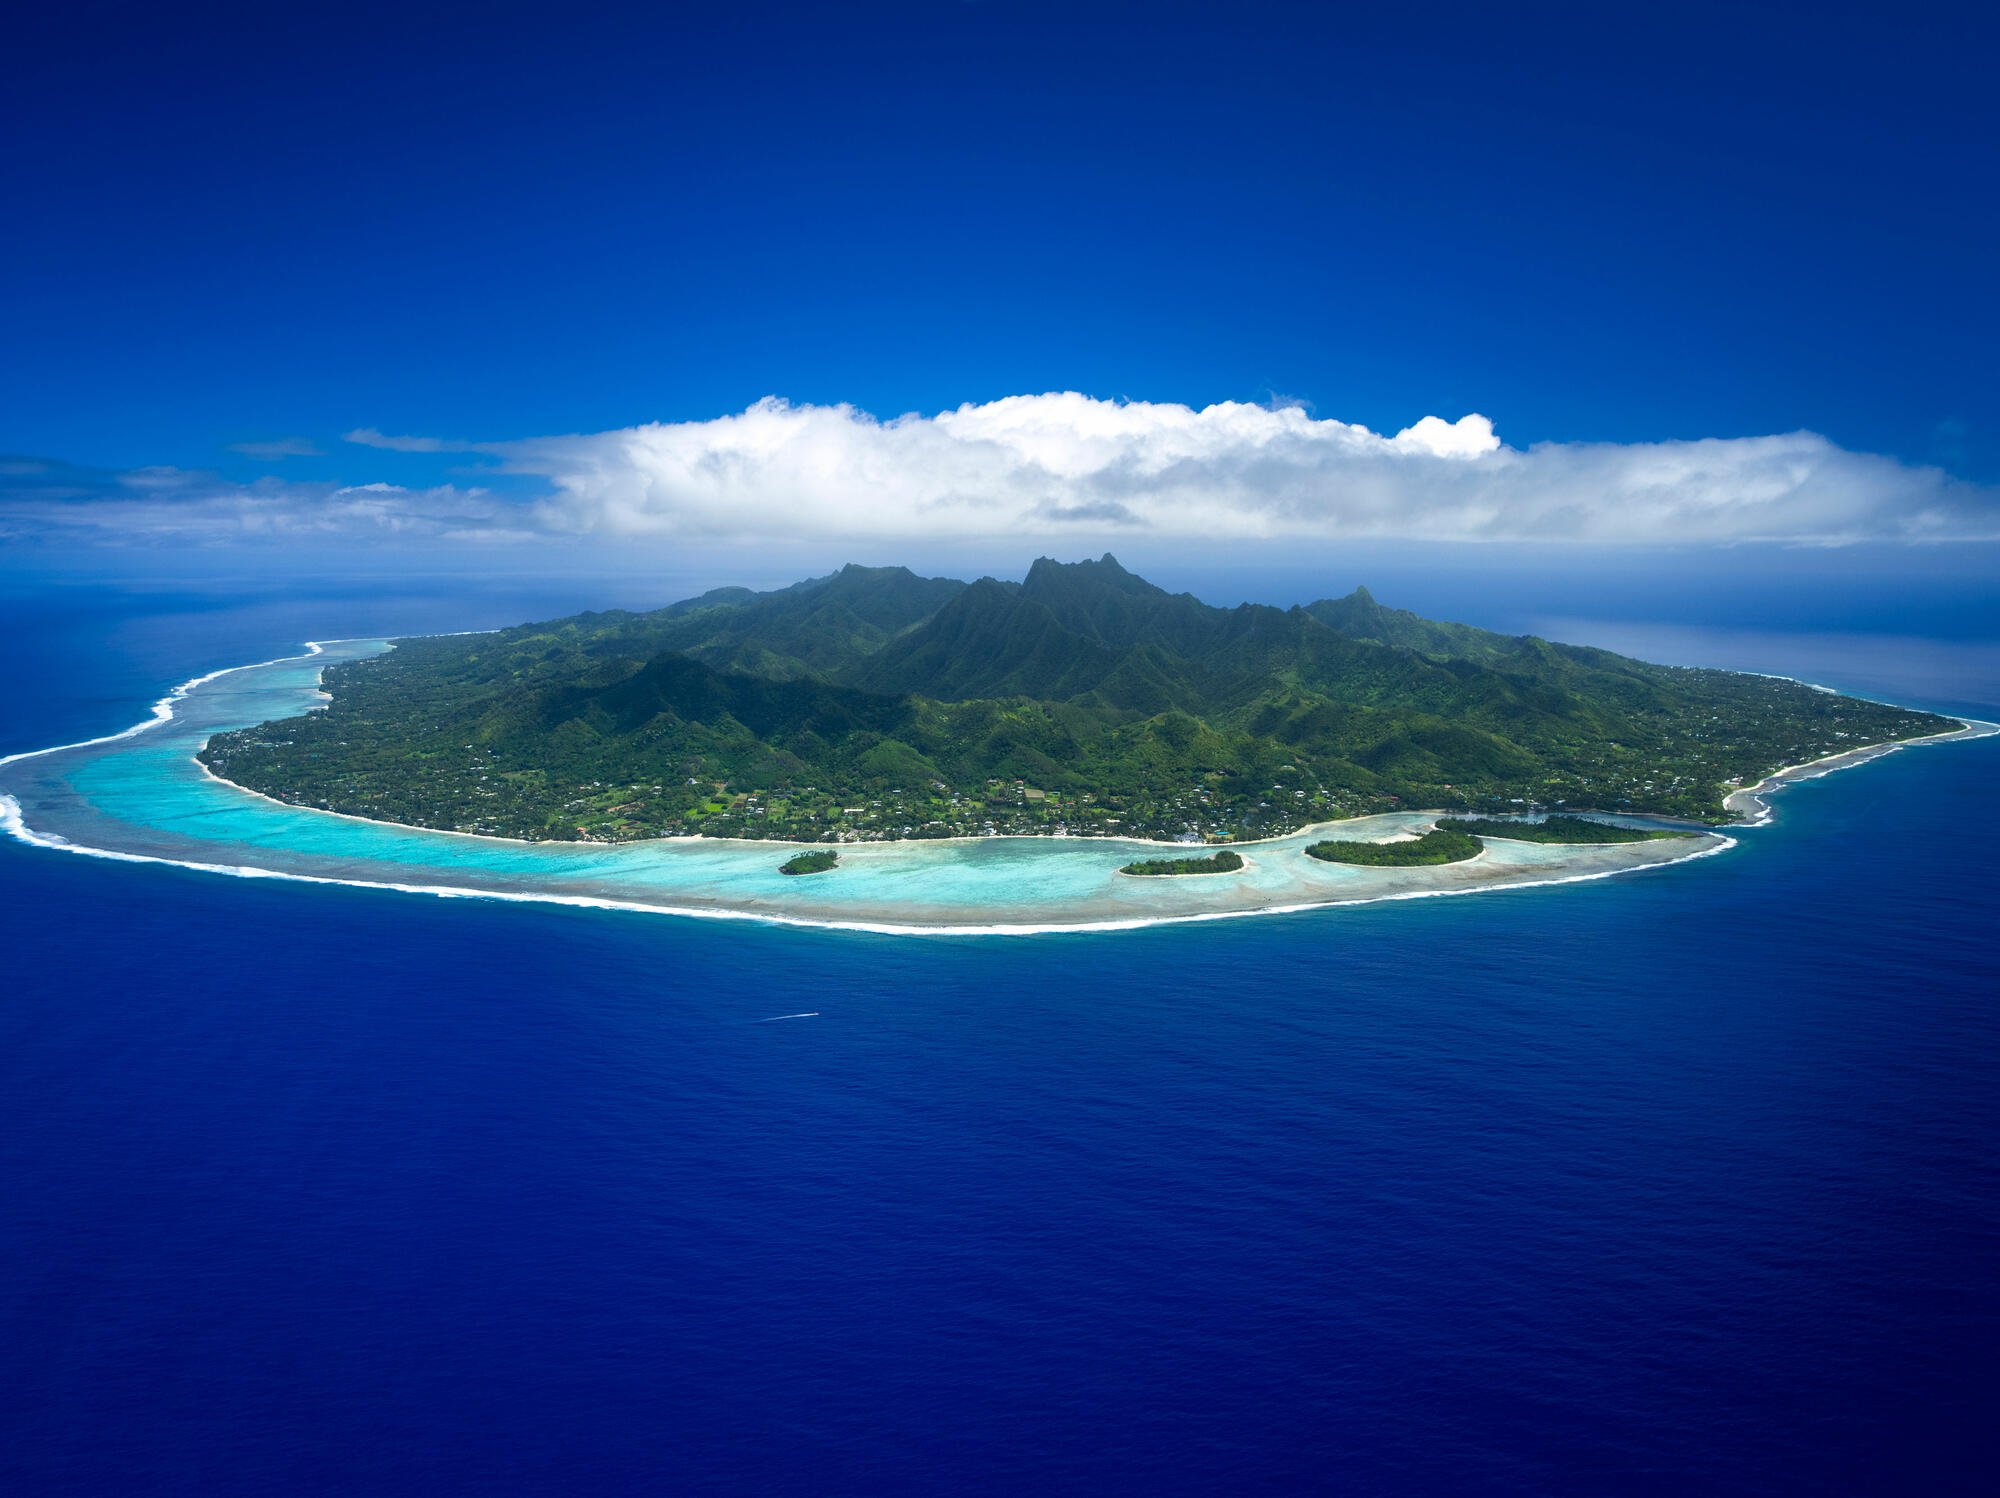 Четырех тысячах островов. Острова Кука. Остров Раротонга. Аитутаки острова Кука. Острова Кука (Cook Islands).